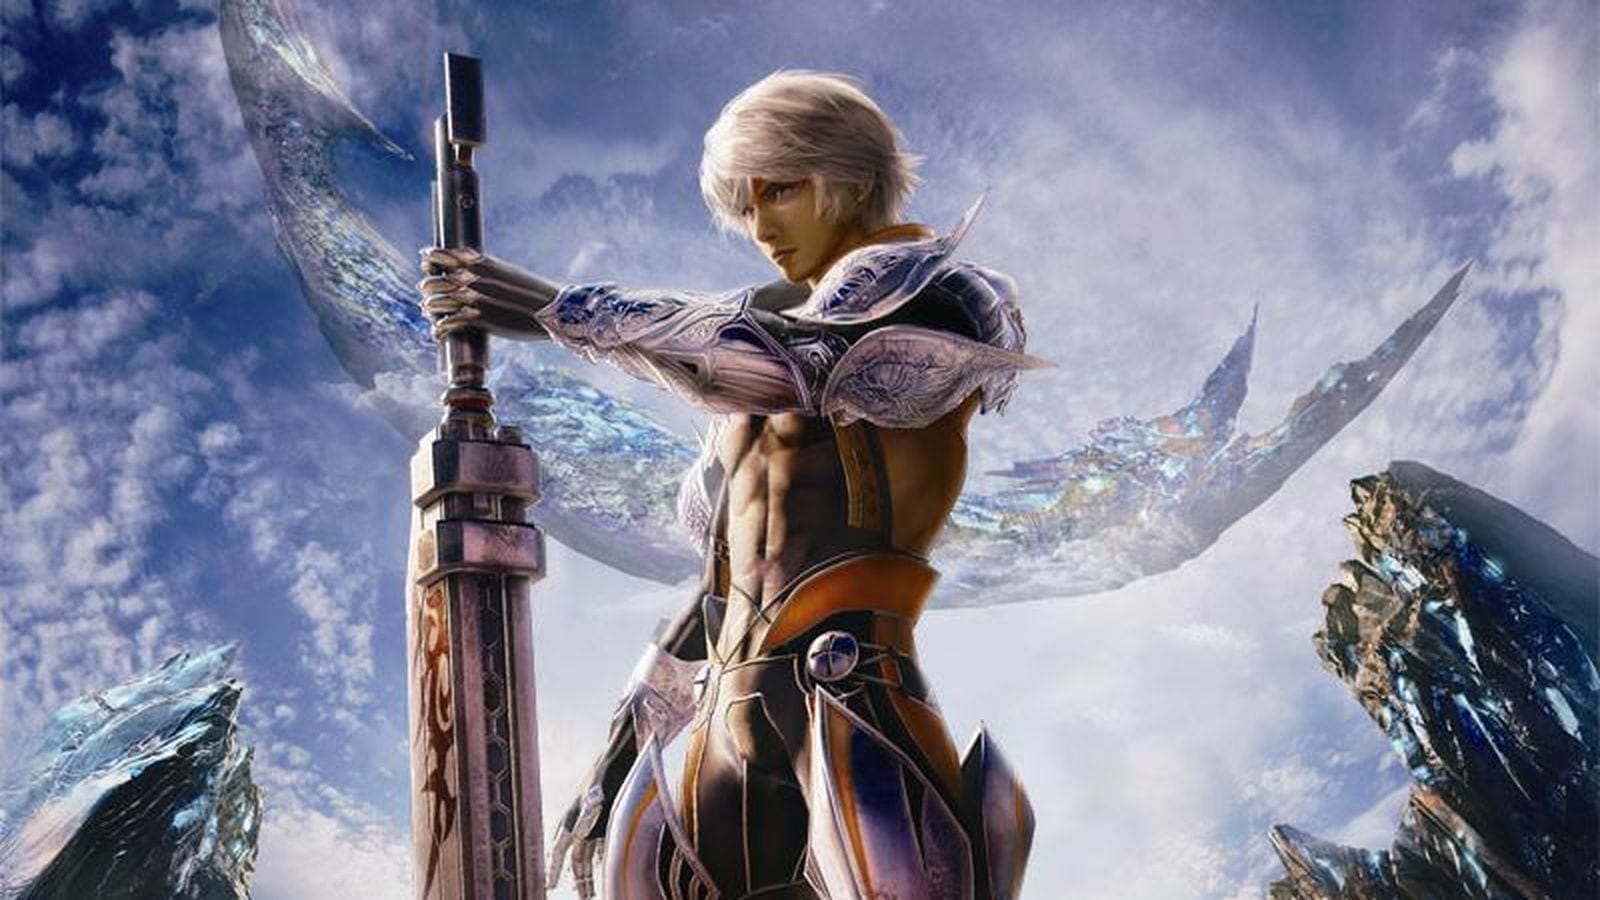 [Felieton] Final Fantasy Mobius i Brave Exvius – różne wymiary kieszonkowych fantazji